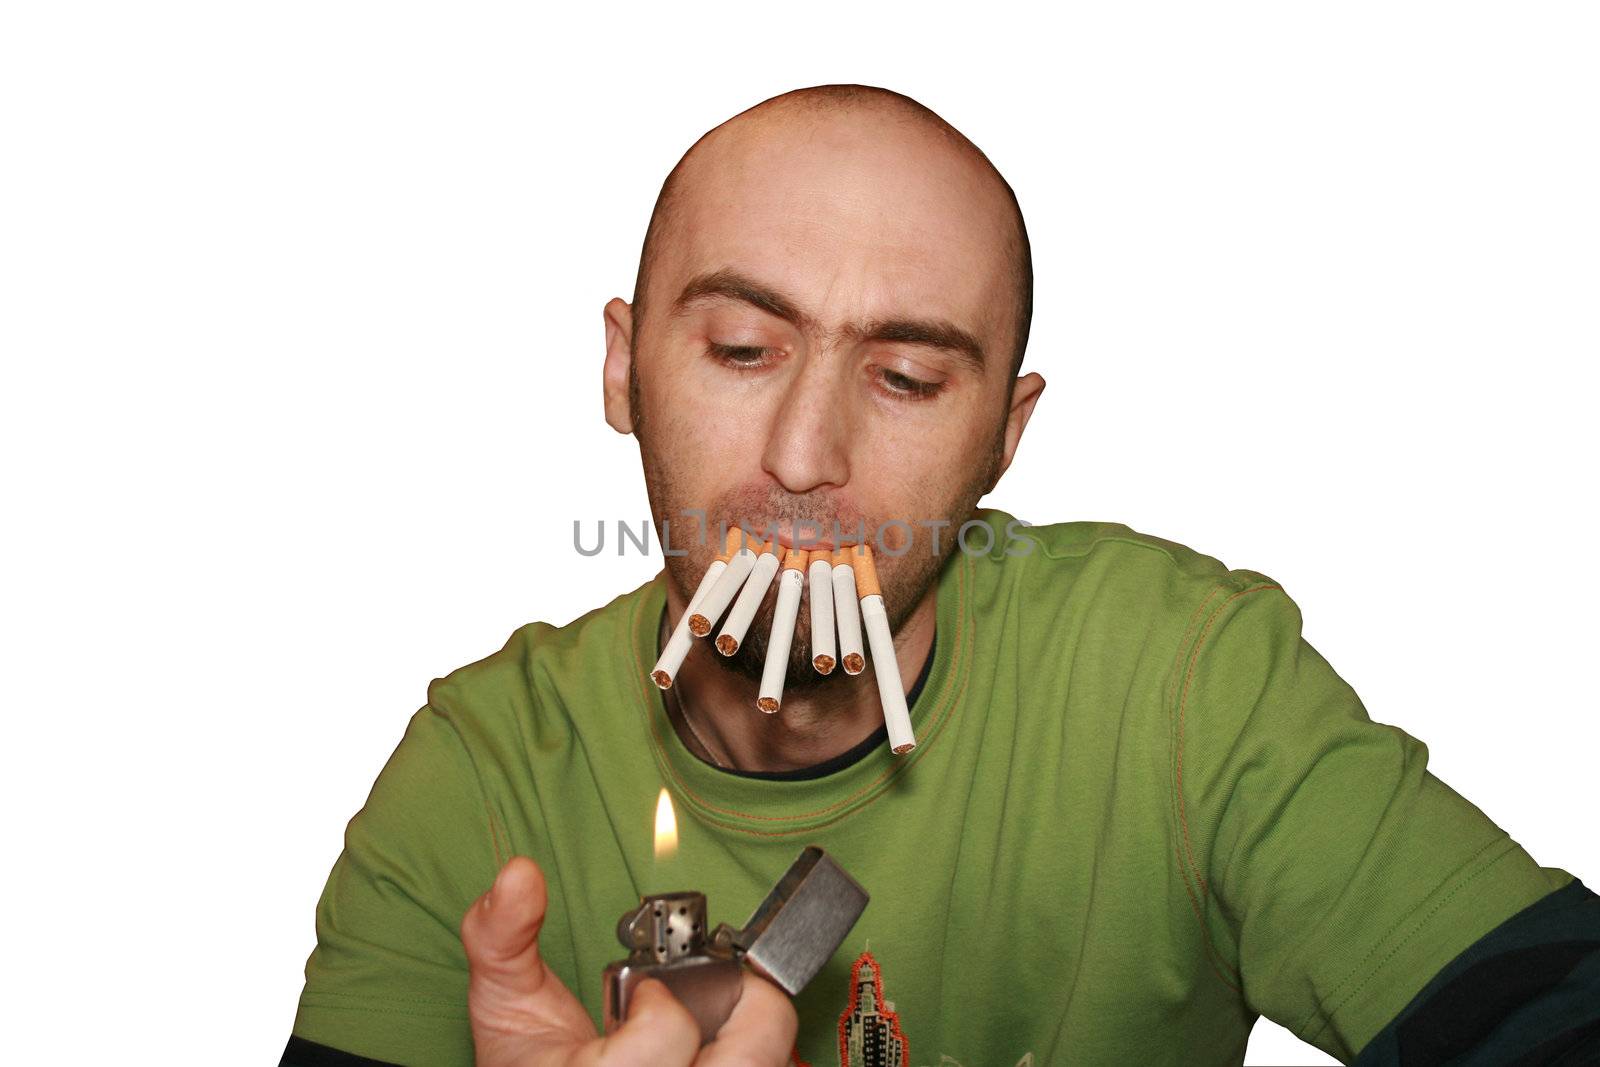 Smoker by tony4urban